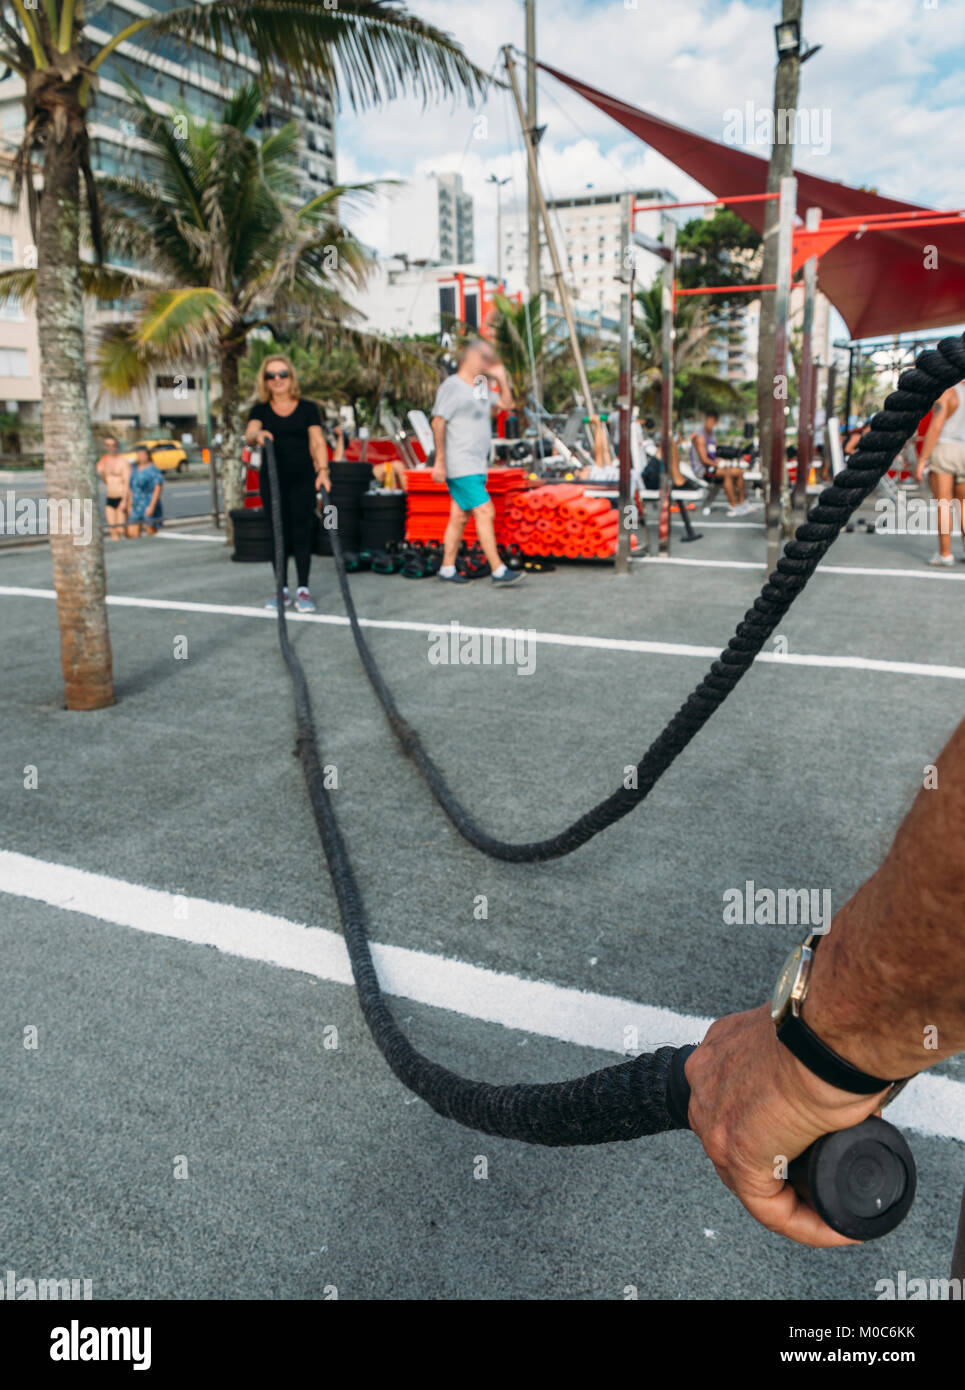 Modello rilasciato: Uomo azienda combattendo la corda con la donna più anziana (70-79) sullo sfondo a palestra pubblica a Ipanema, Rio de Janeiro, Brasile Foto Stock